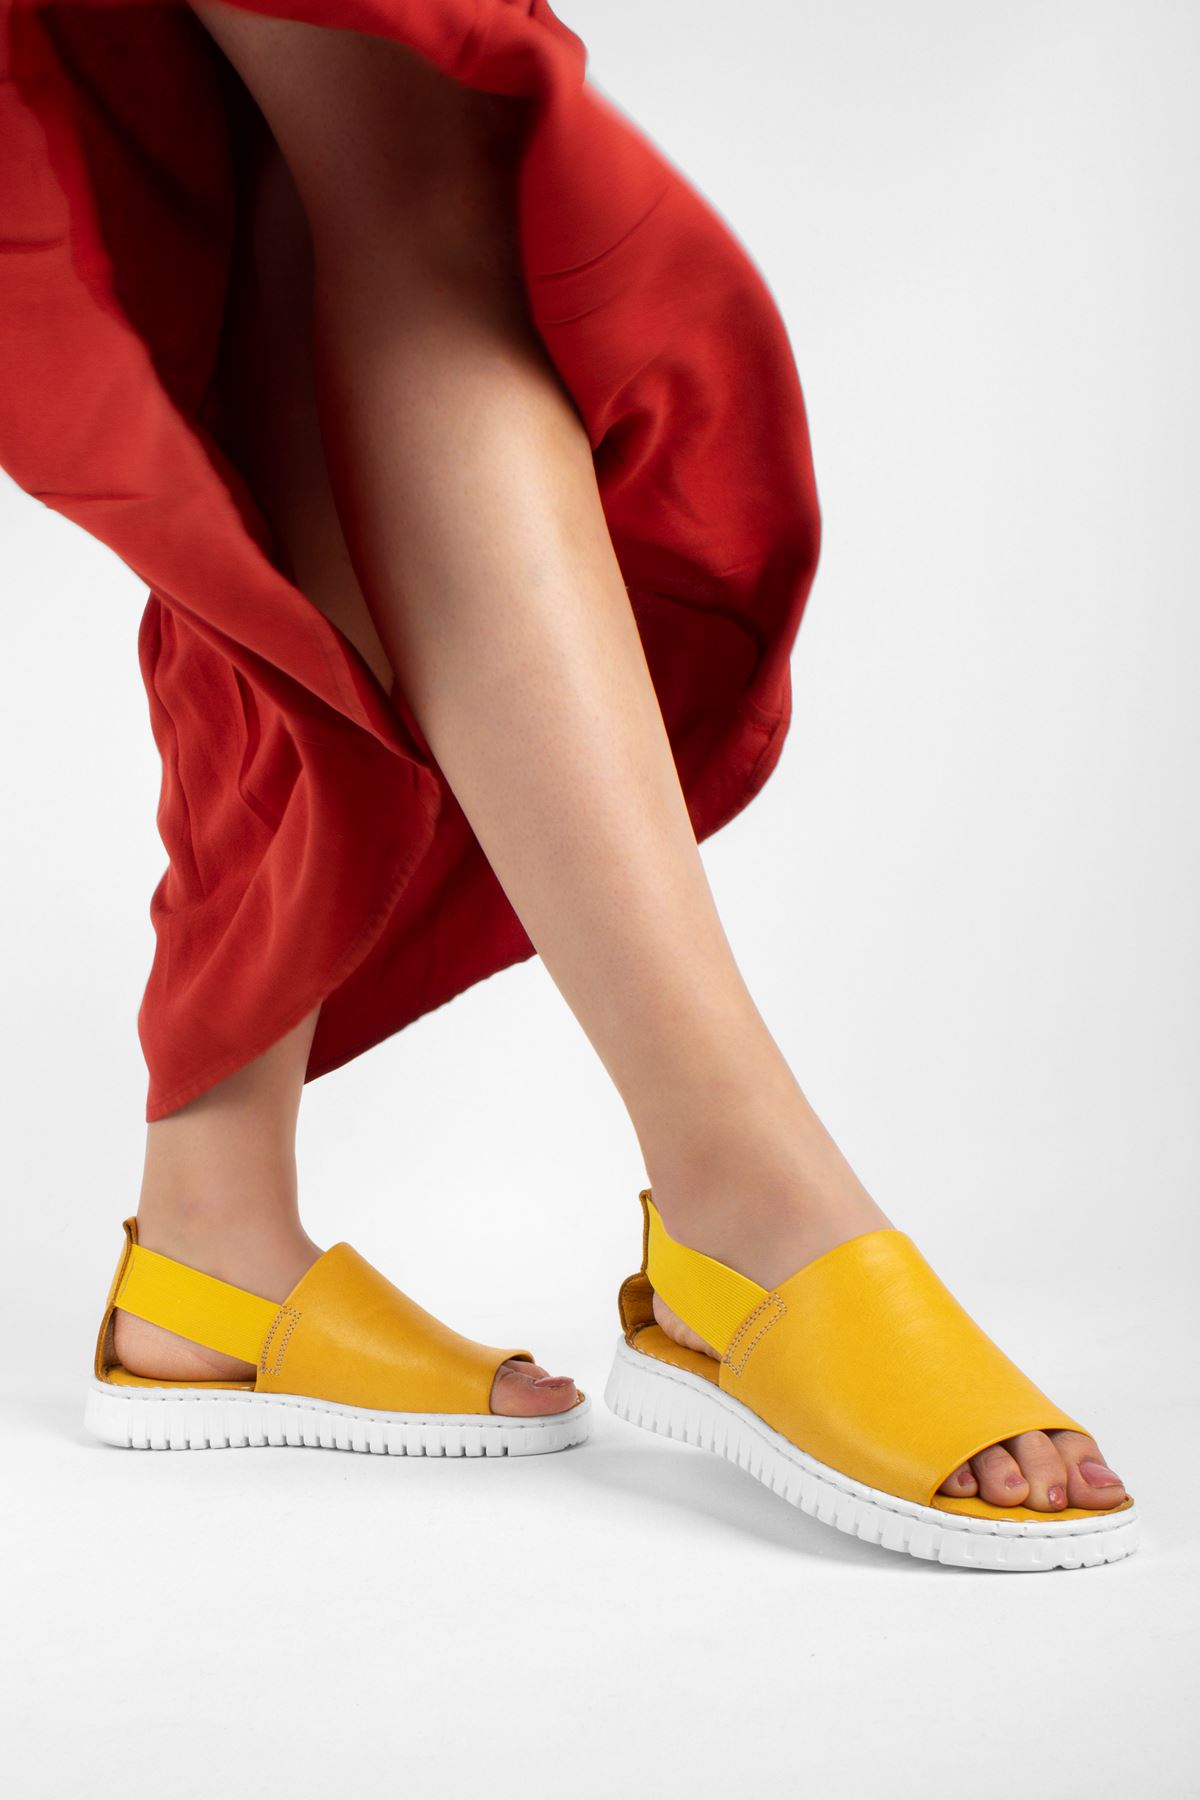 Pollen Hakiki Deri Kadın Sandalet Düz Model-Sarı